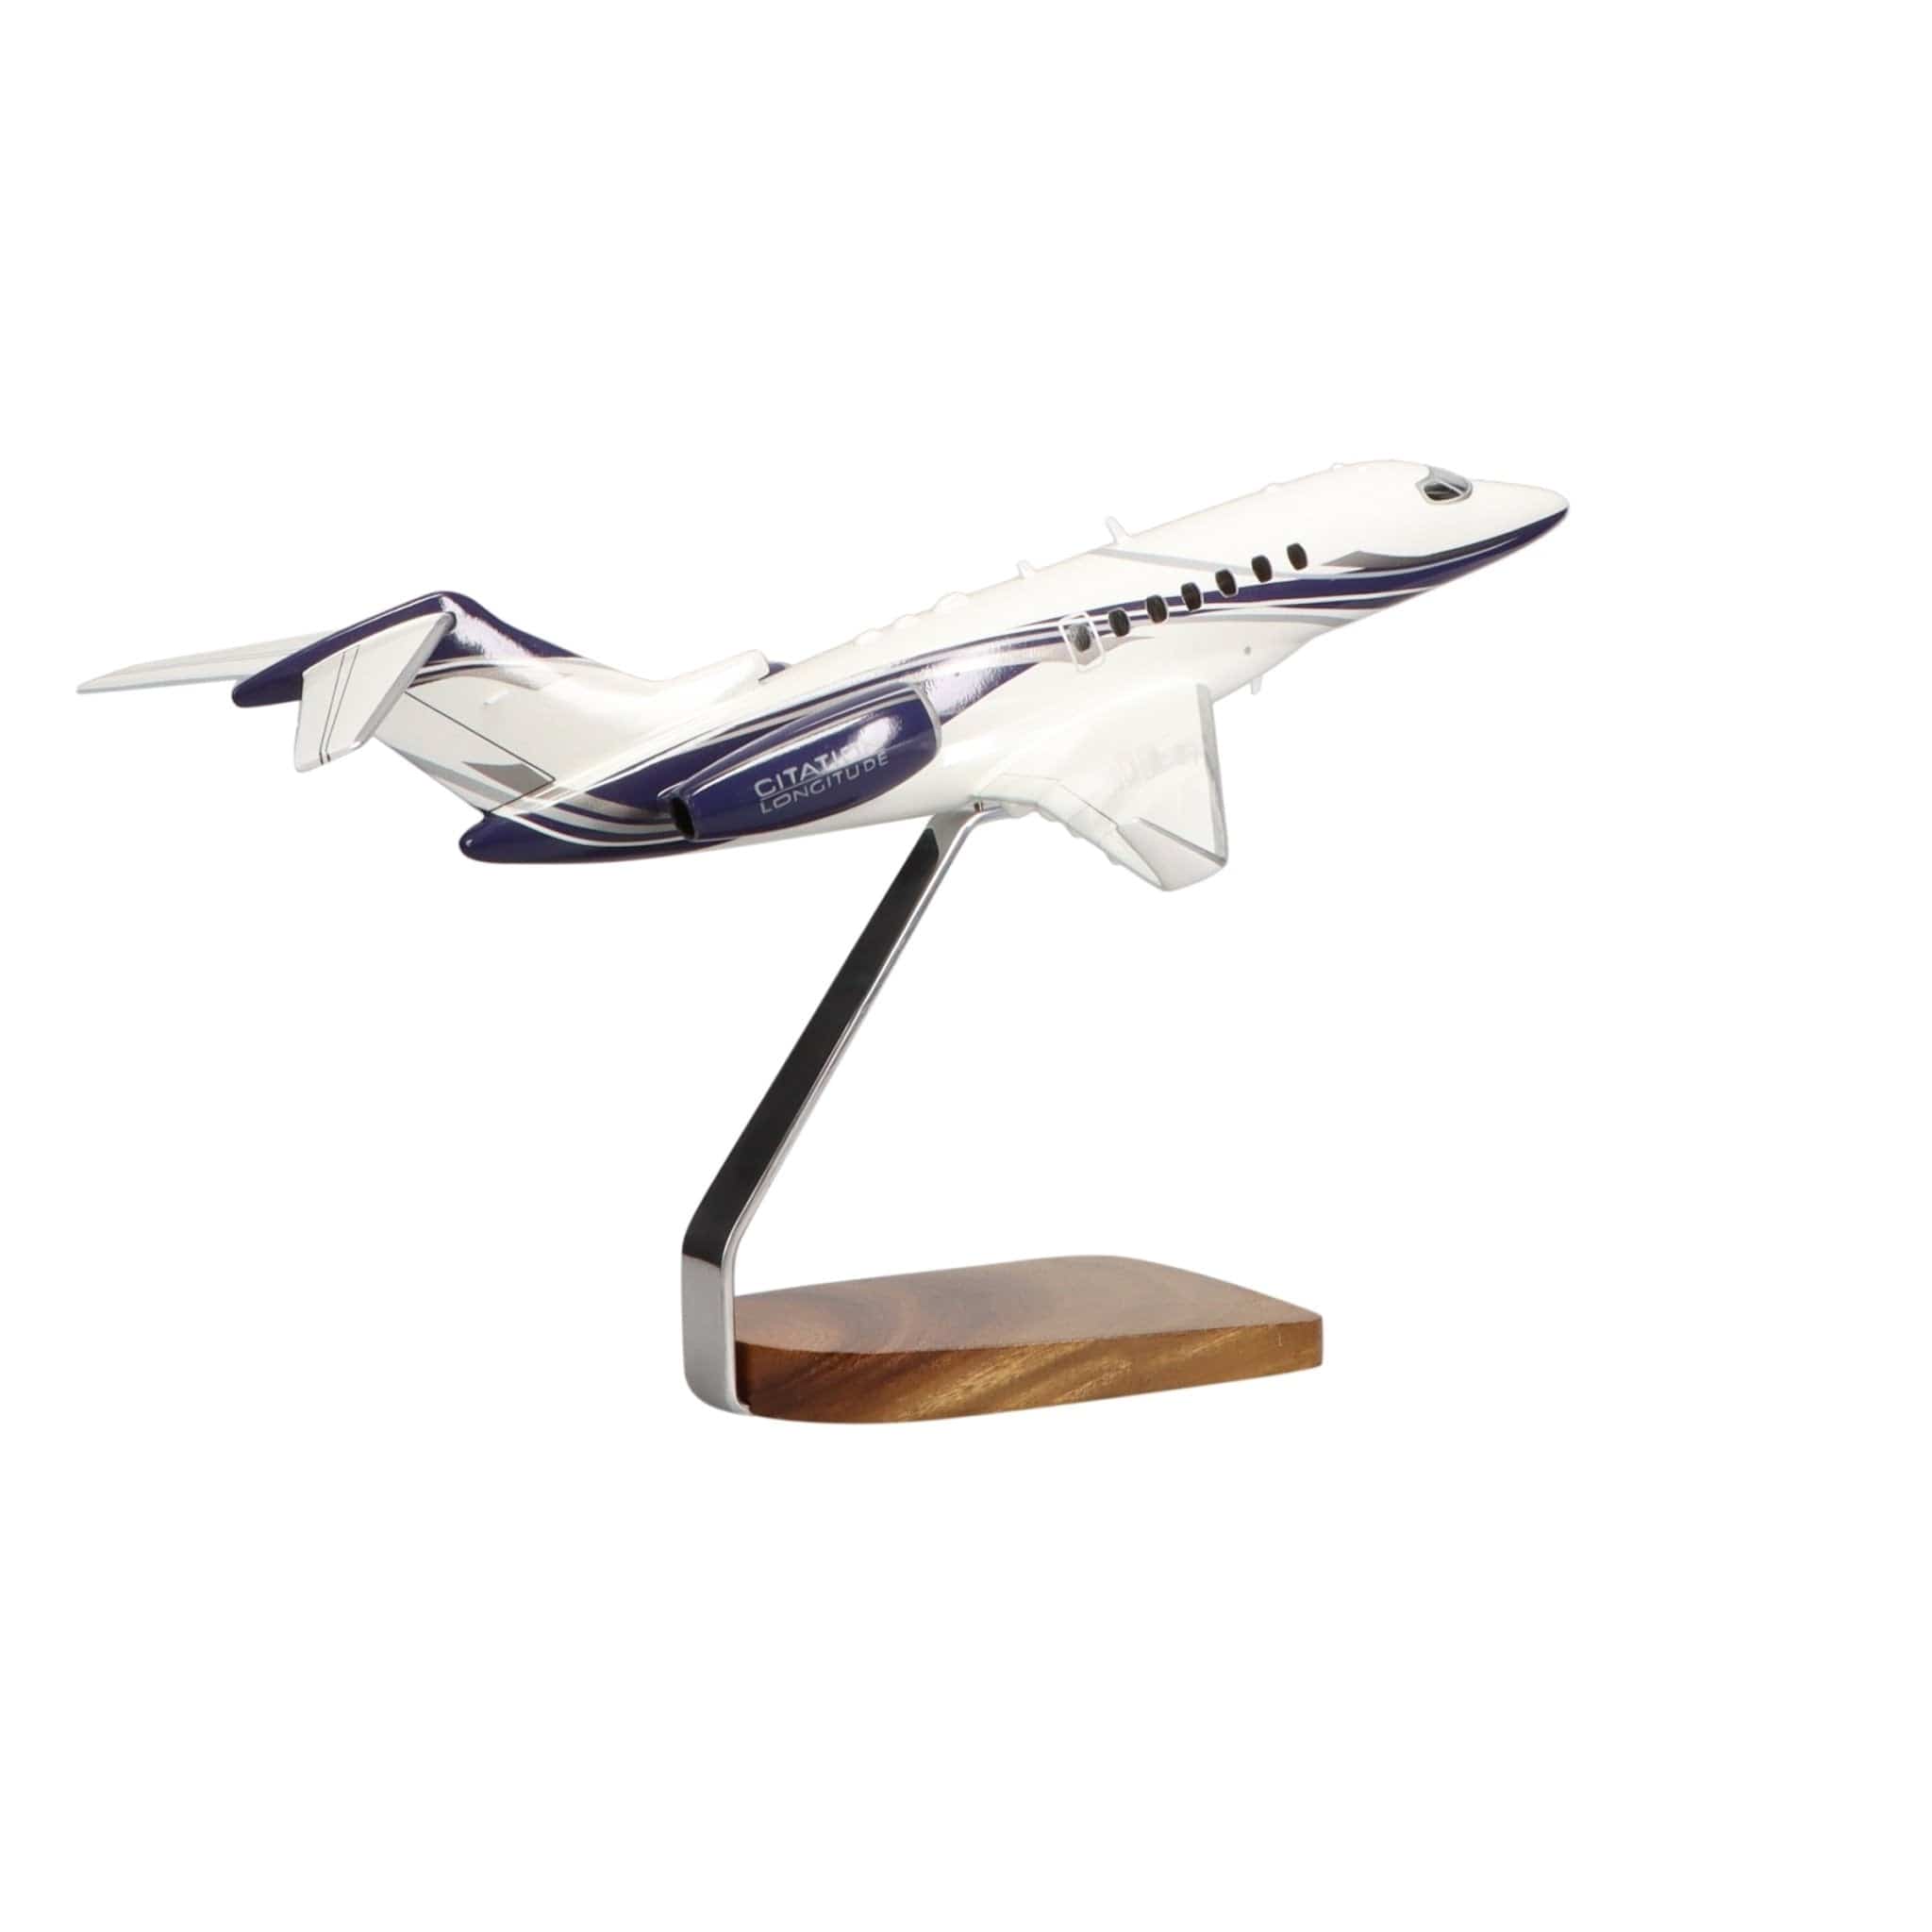 Cessna® Citation Longitude Clear Canopy Large Mahogany Model